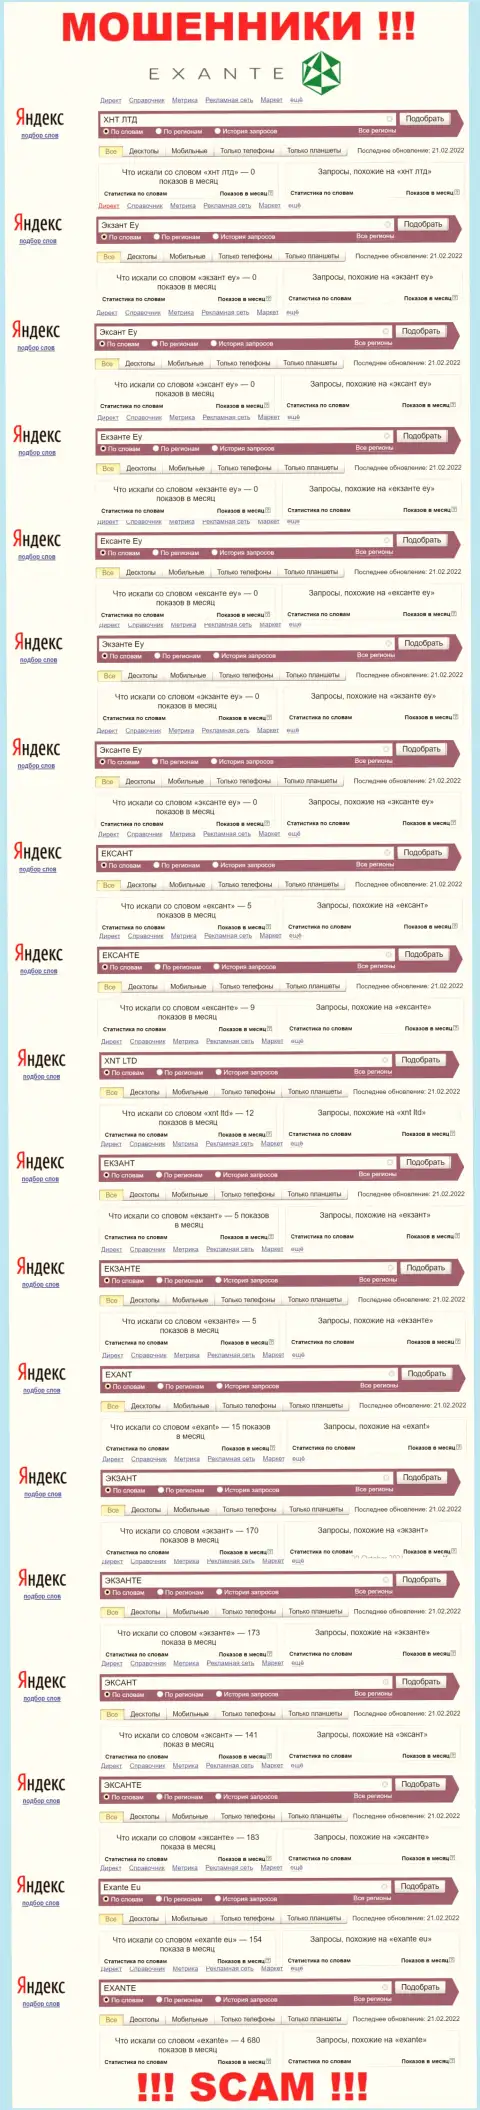 Количество online запросов в поисковиках internet сети по бренду жуликов Exante Eu